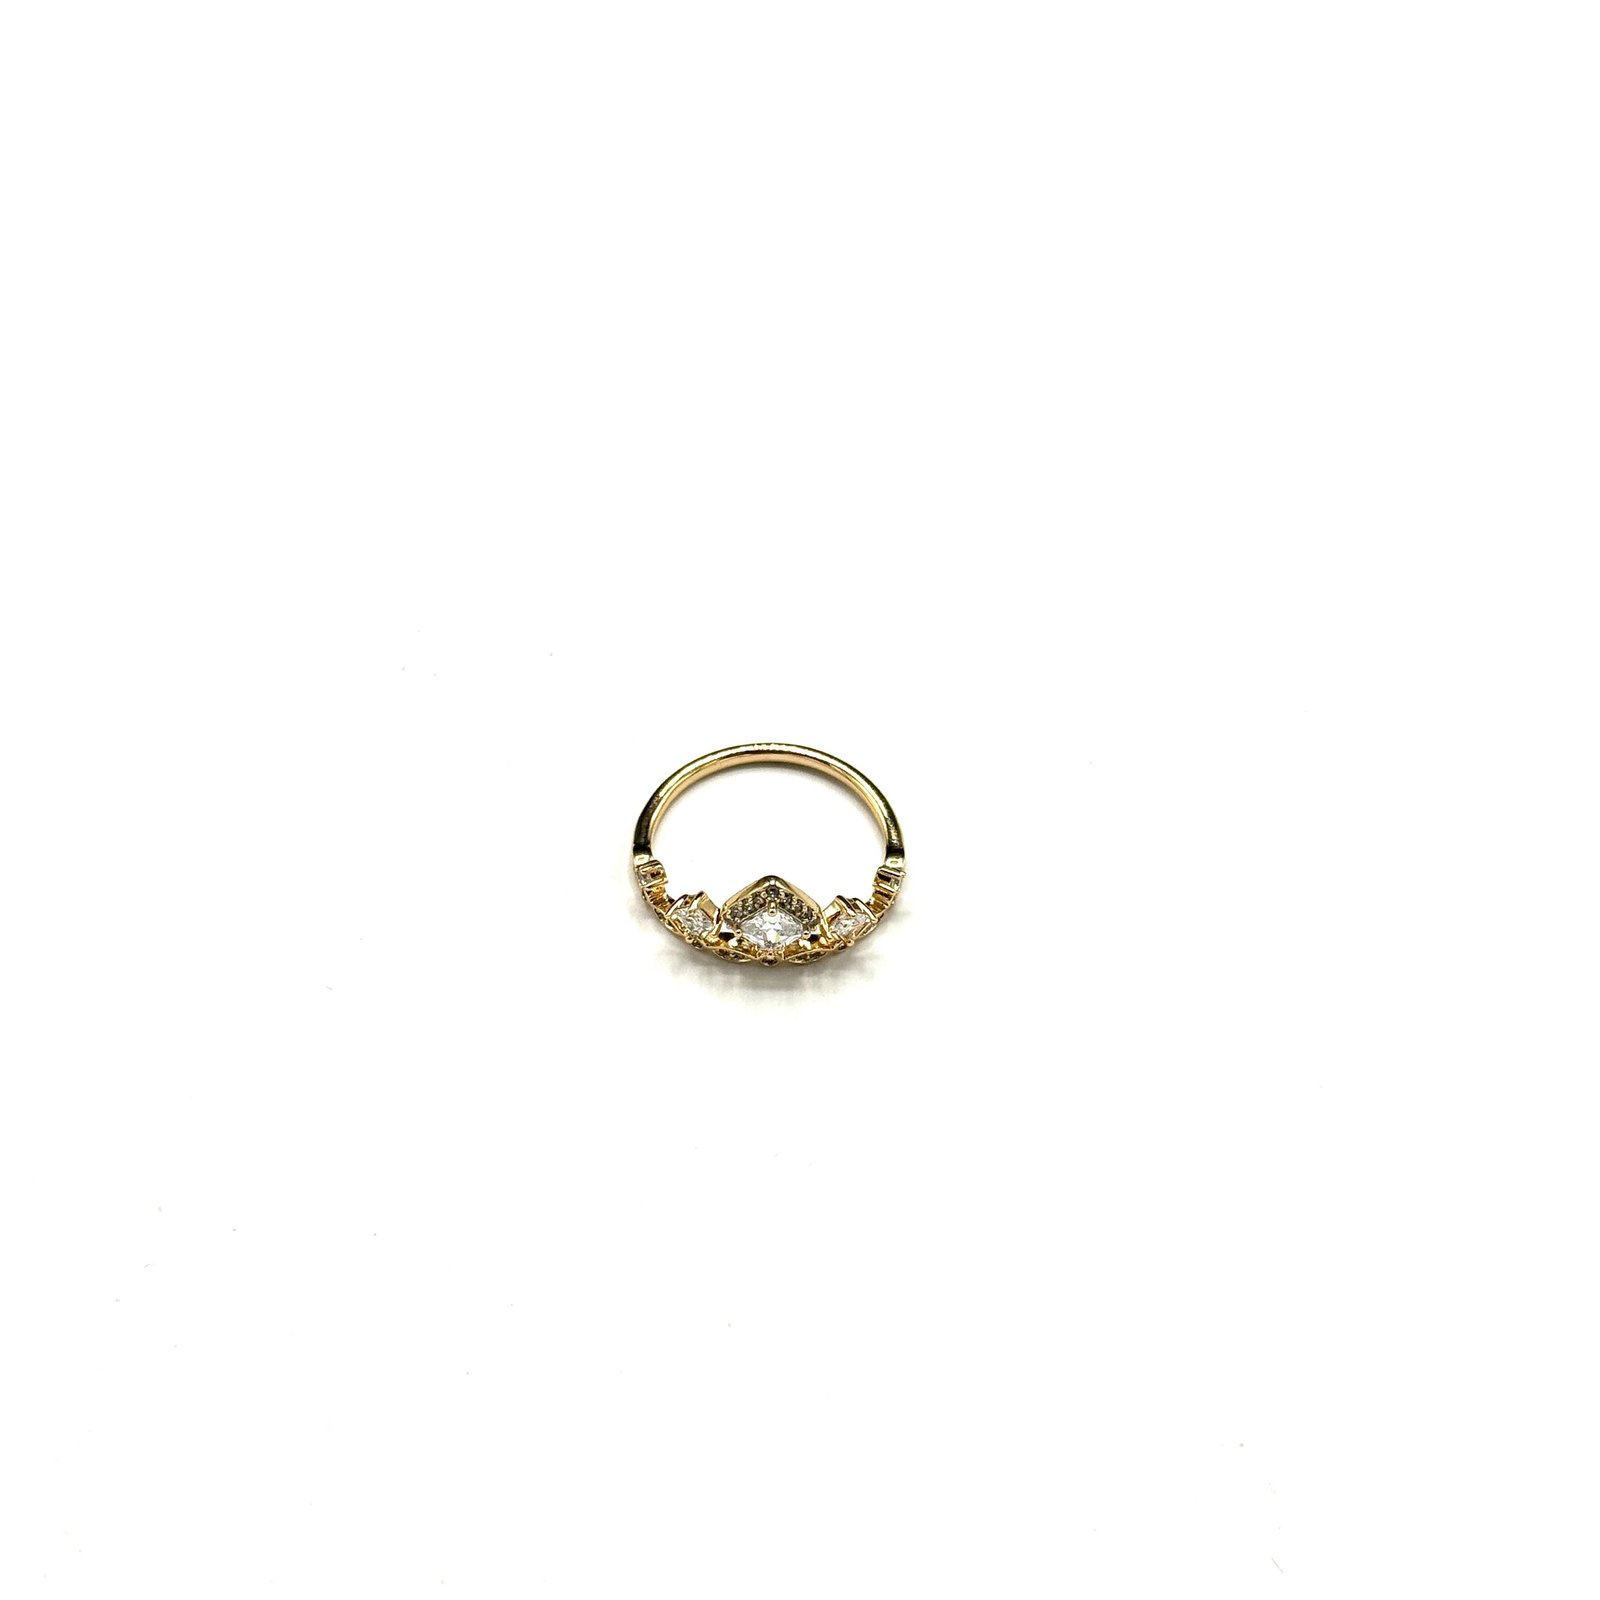 Premium Quality Gold Plated Rings ART-FAJ-5113